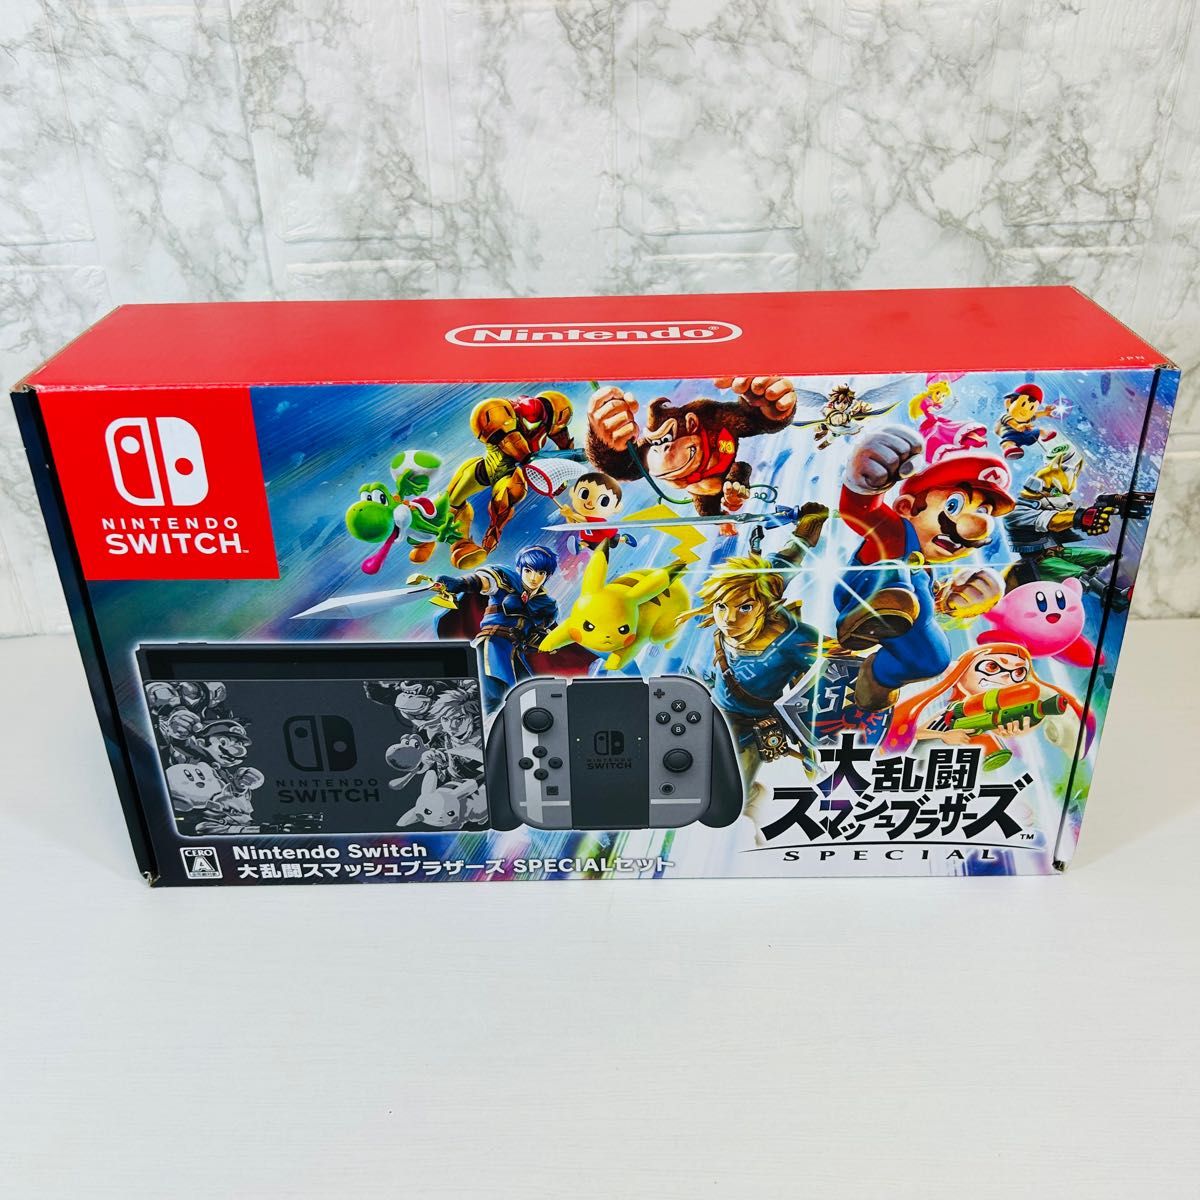 Nintendo Switch 大乱闘スマッシュブラザーズSPECIAL スペシャルセット